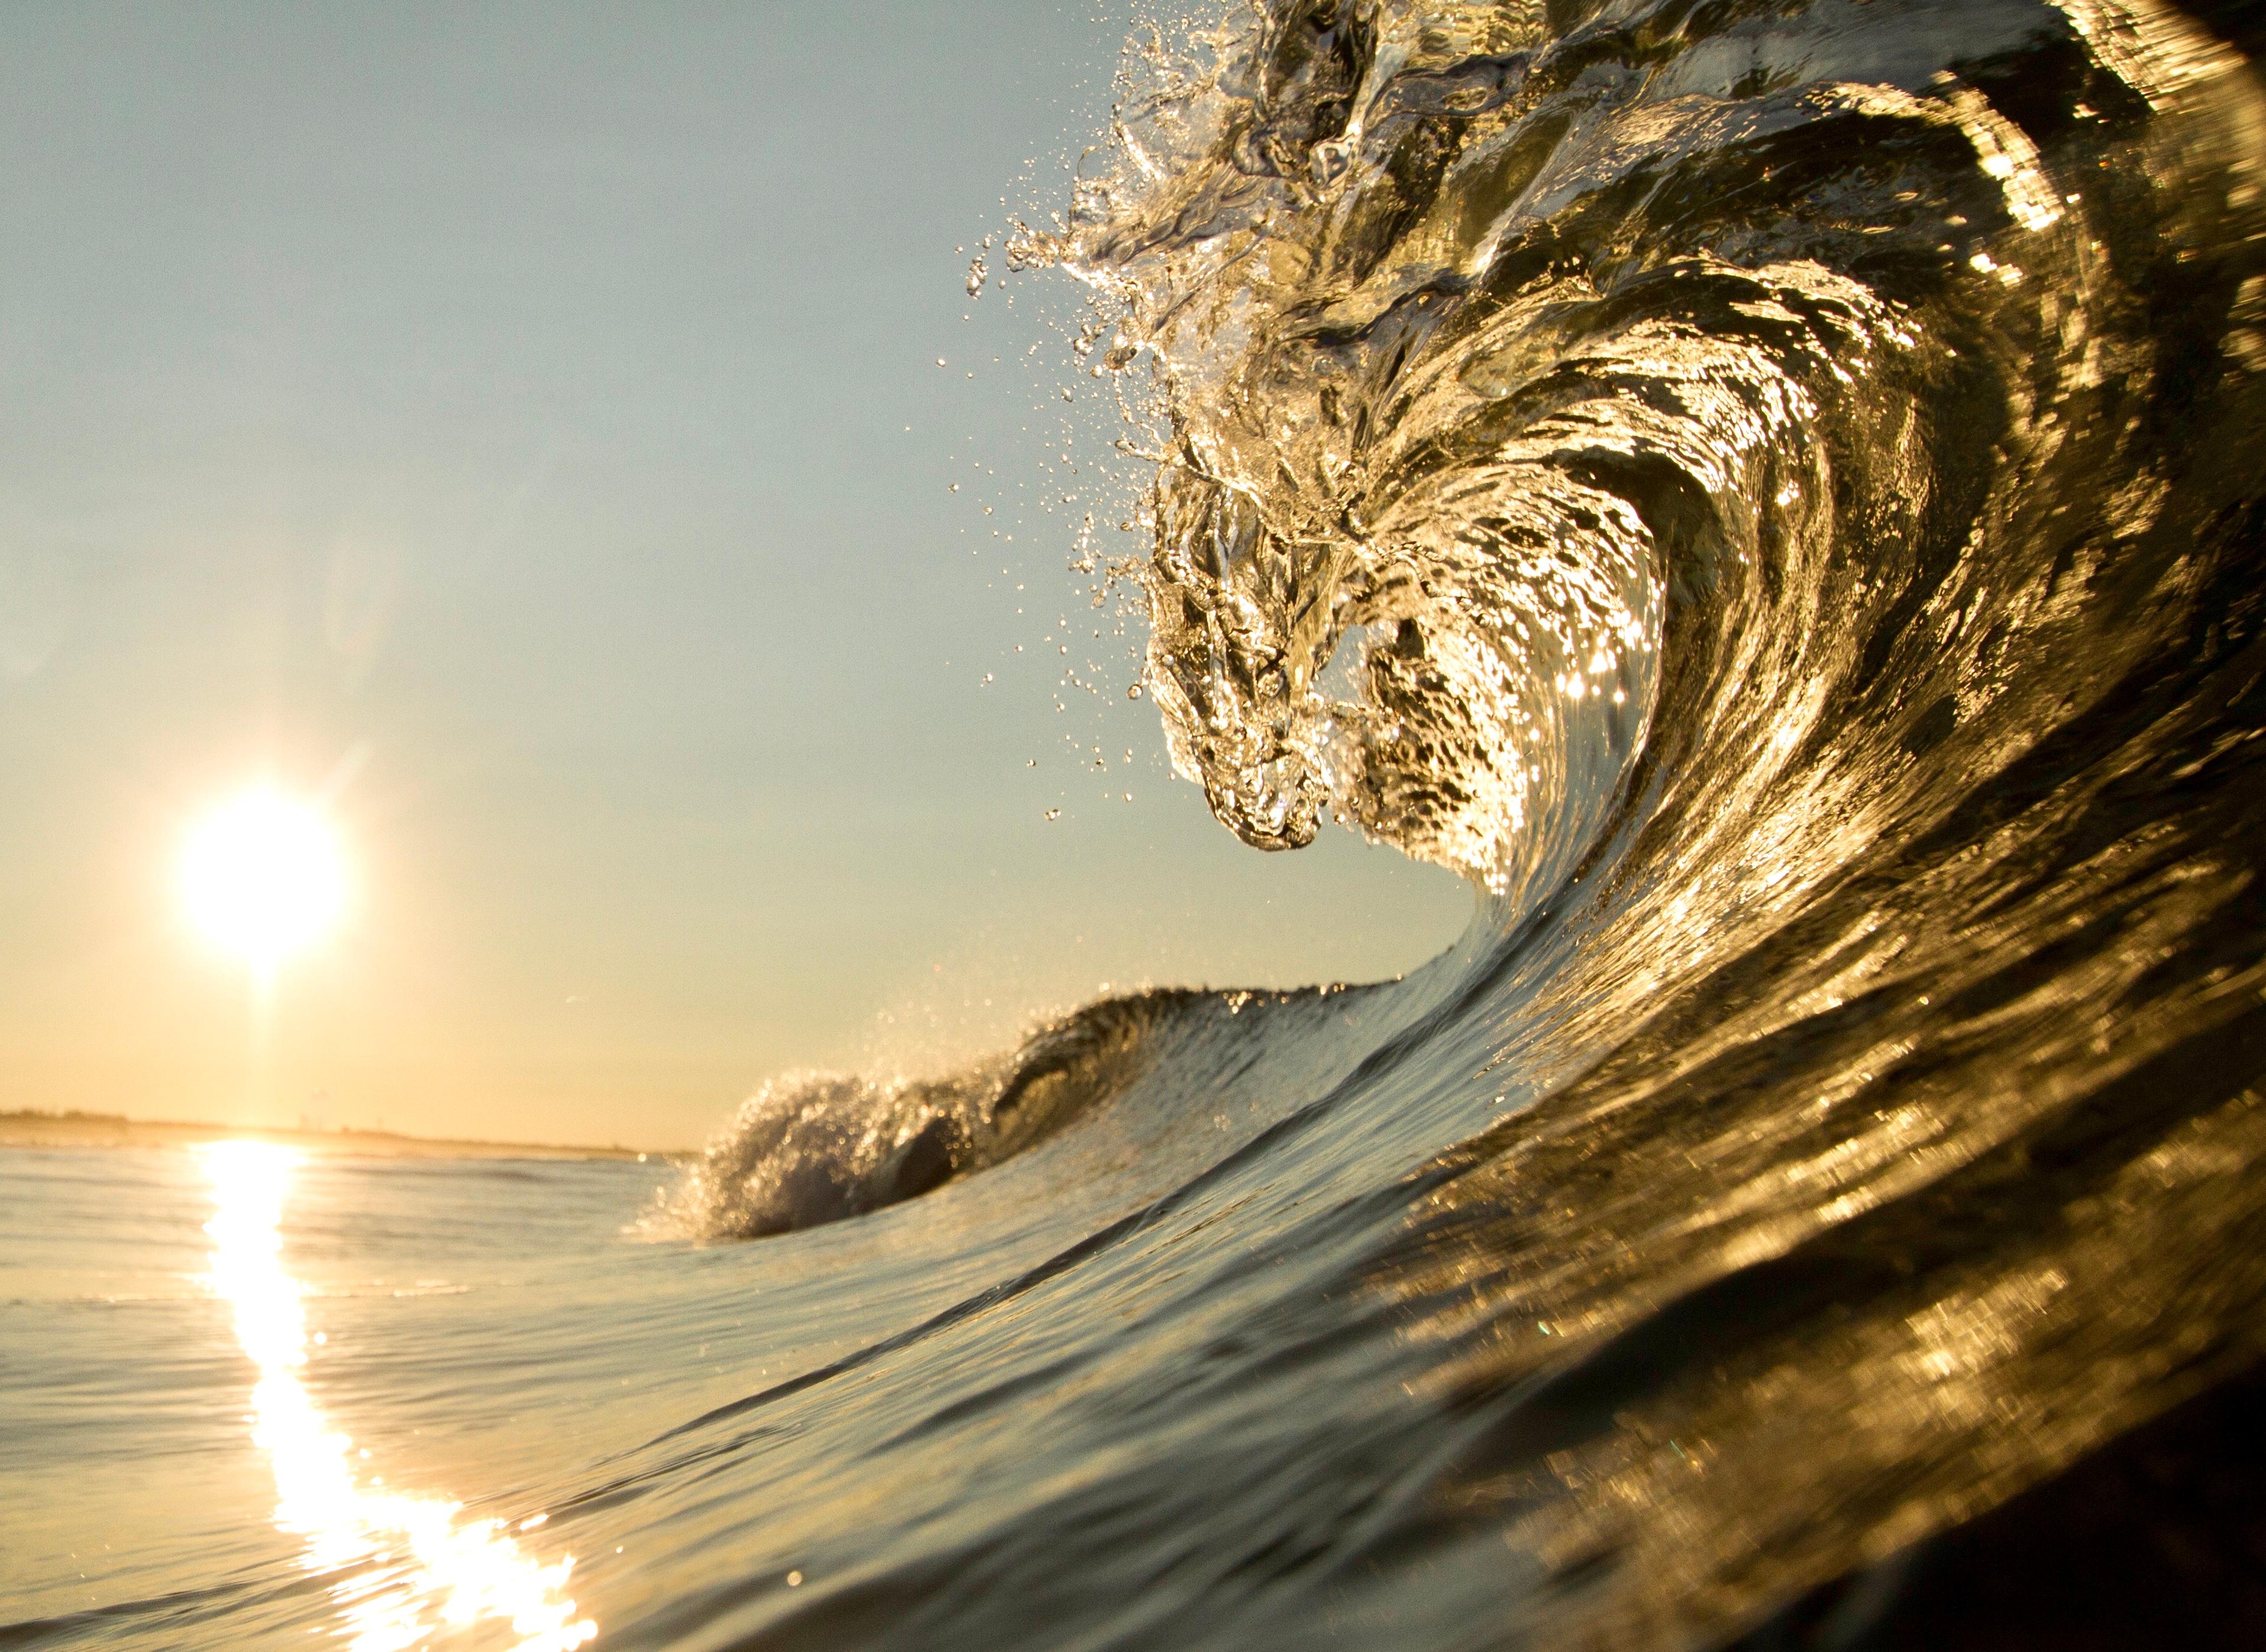 The Lion Wave, photographie d'art de paysage marin, encadrée dans du plexiglas, signée 